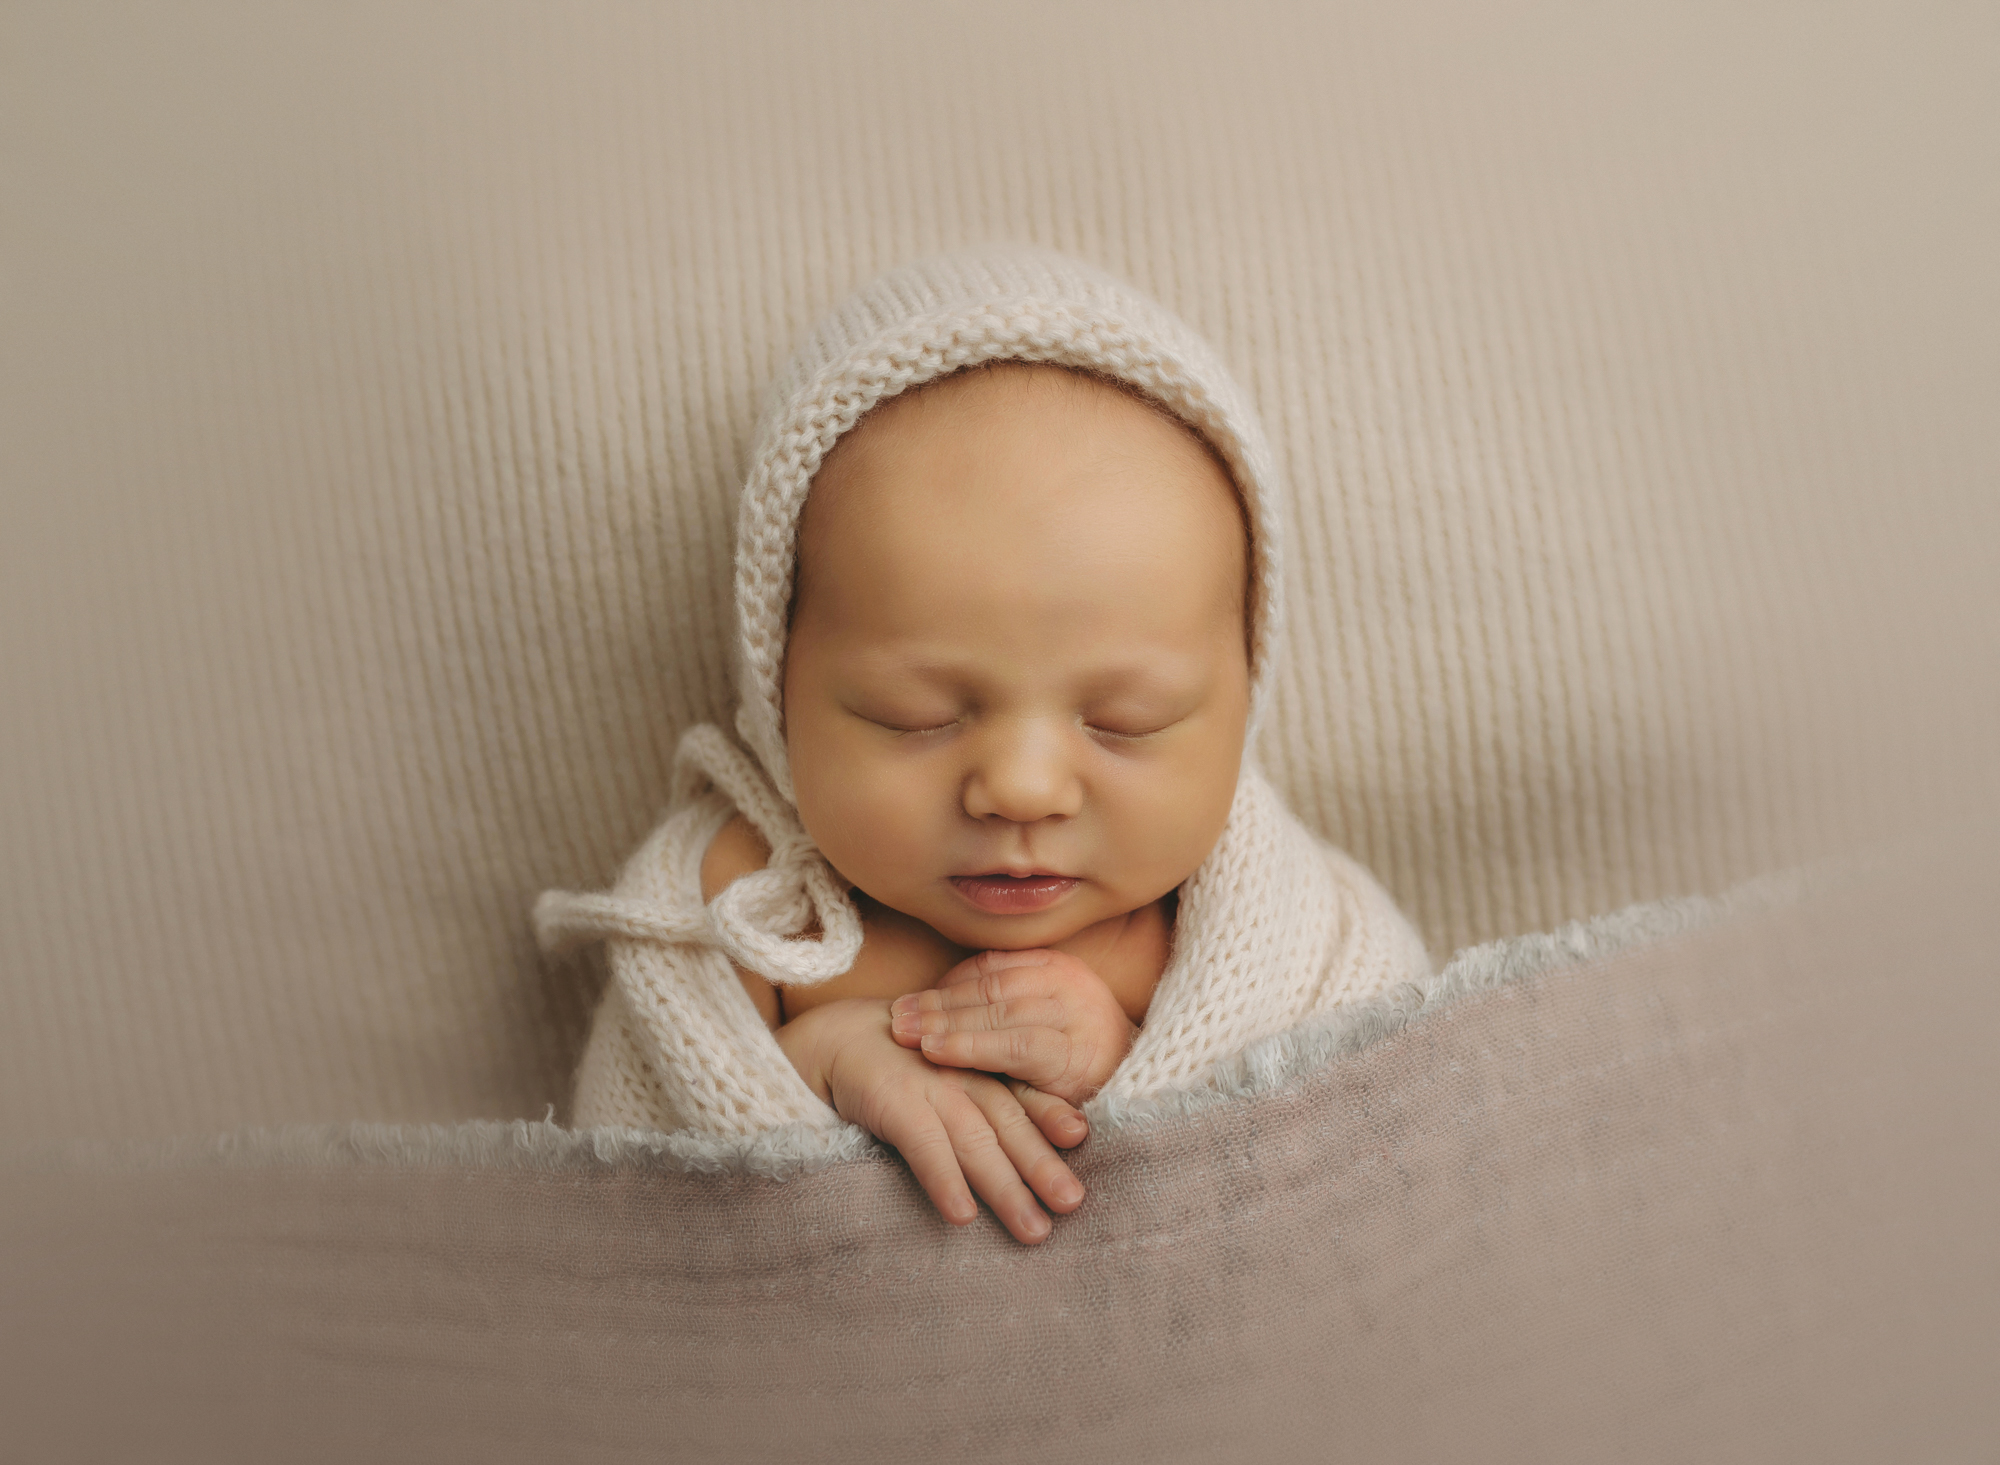 Newborn baby in white bonnet